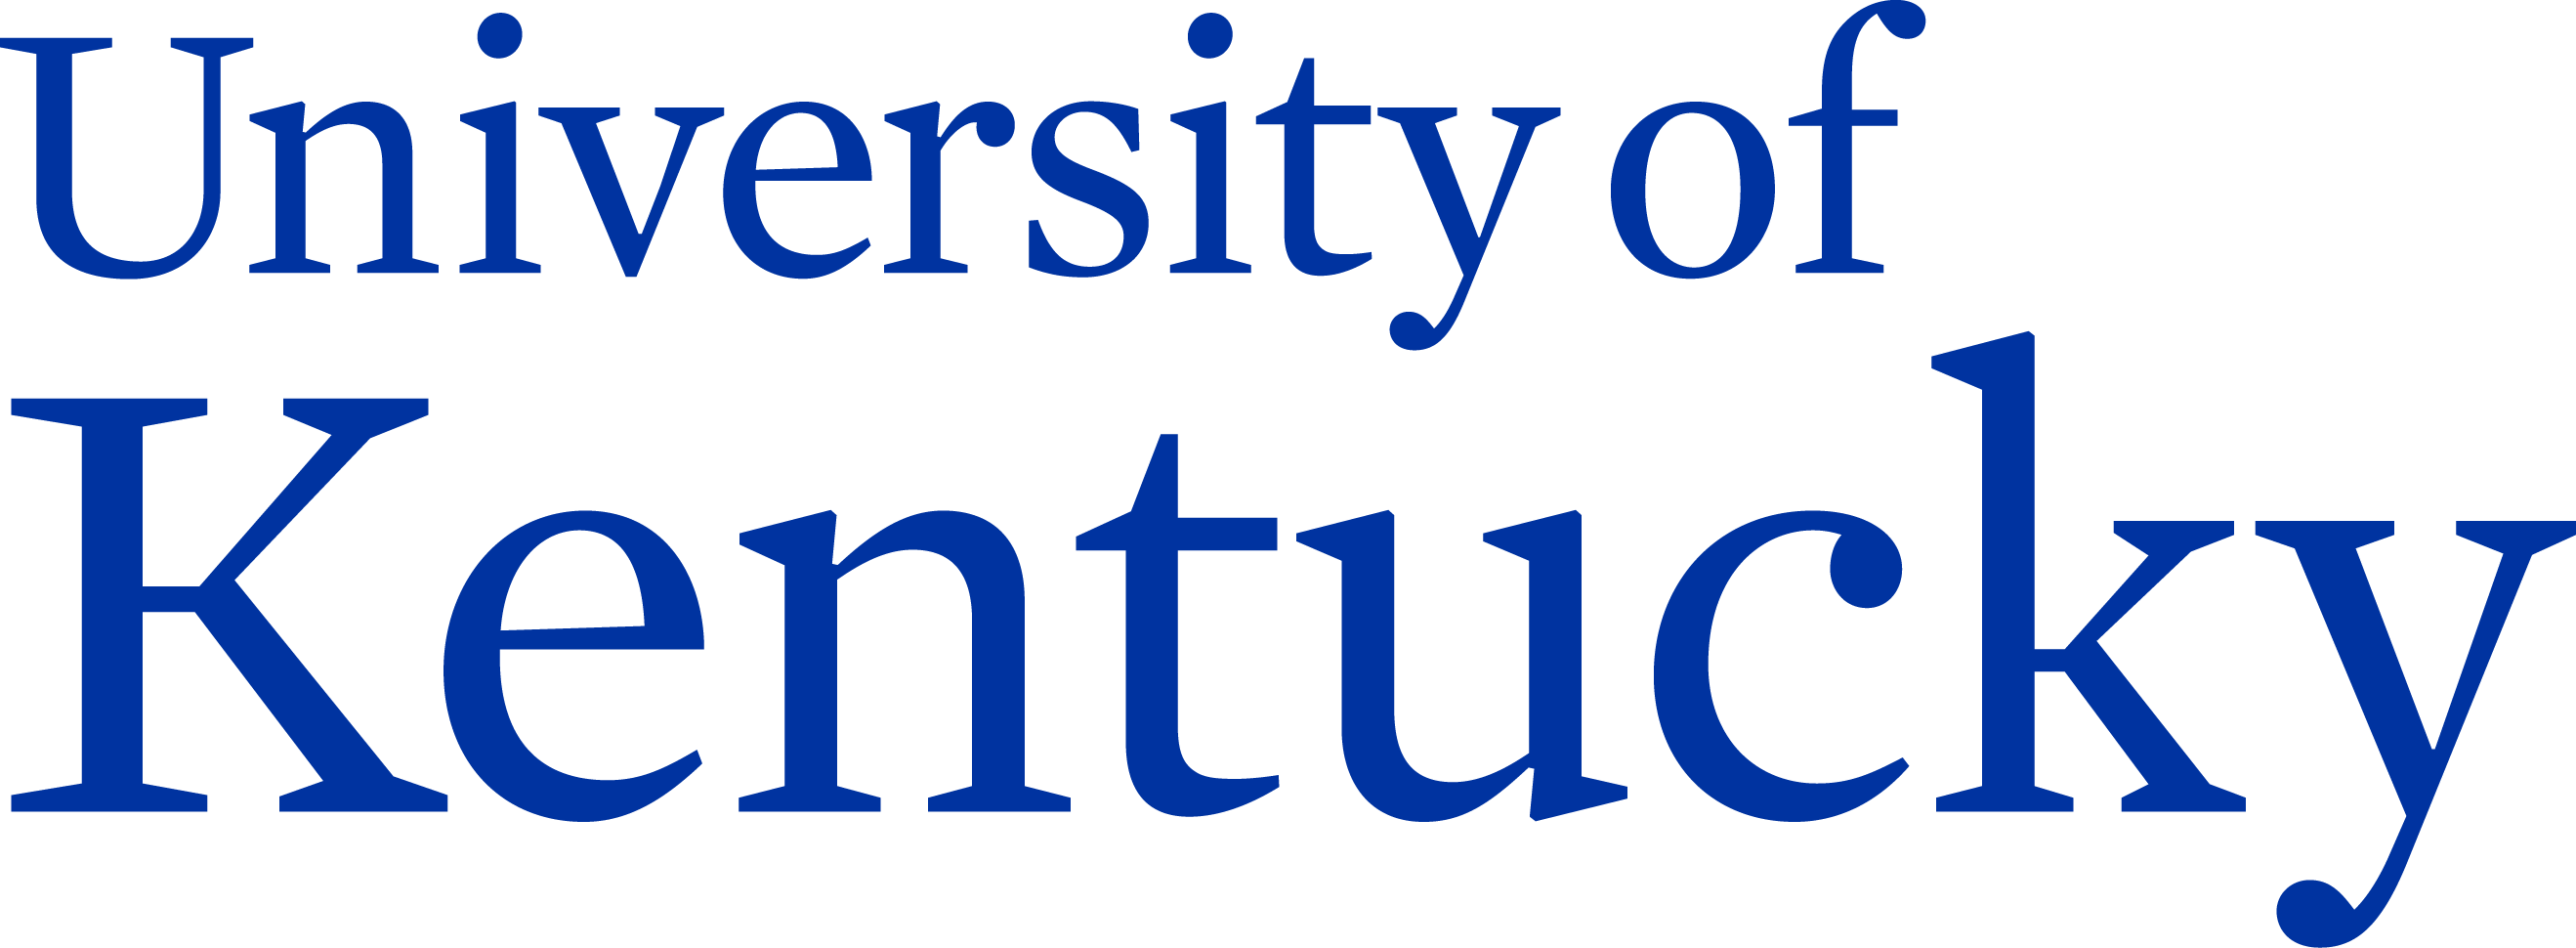 UK Logo - University of Kentucky